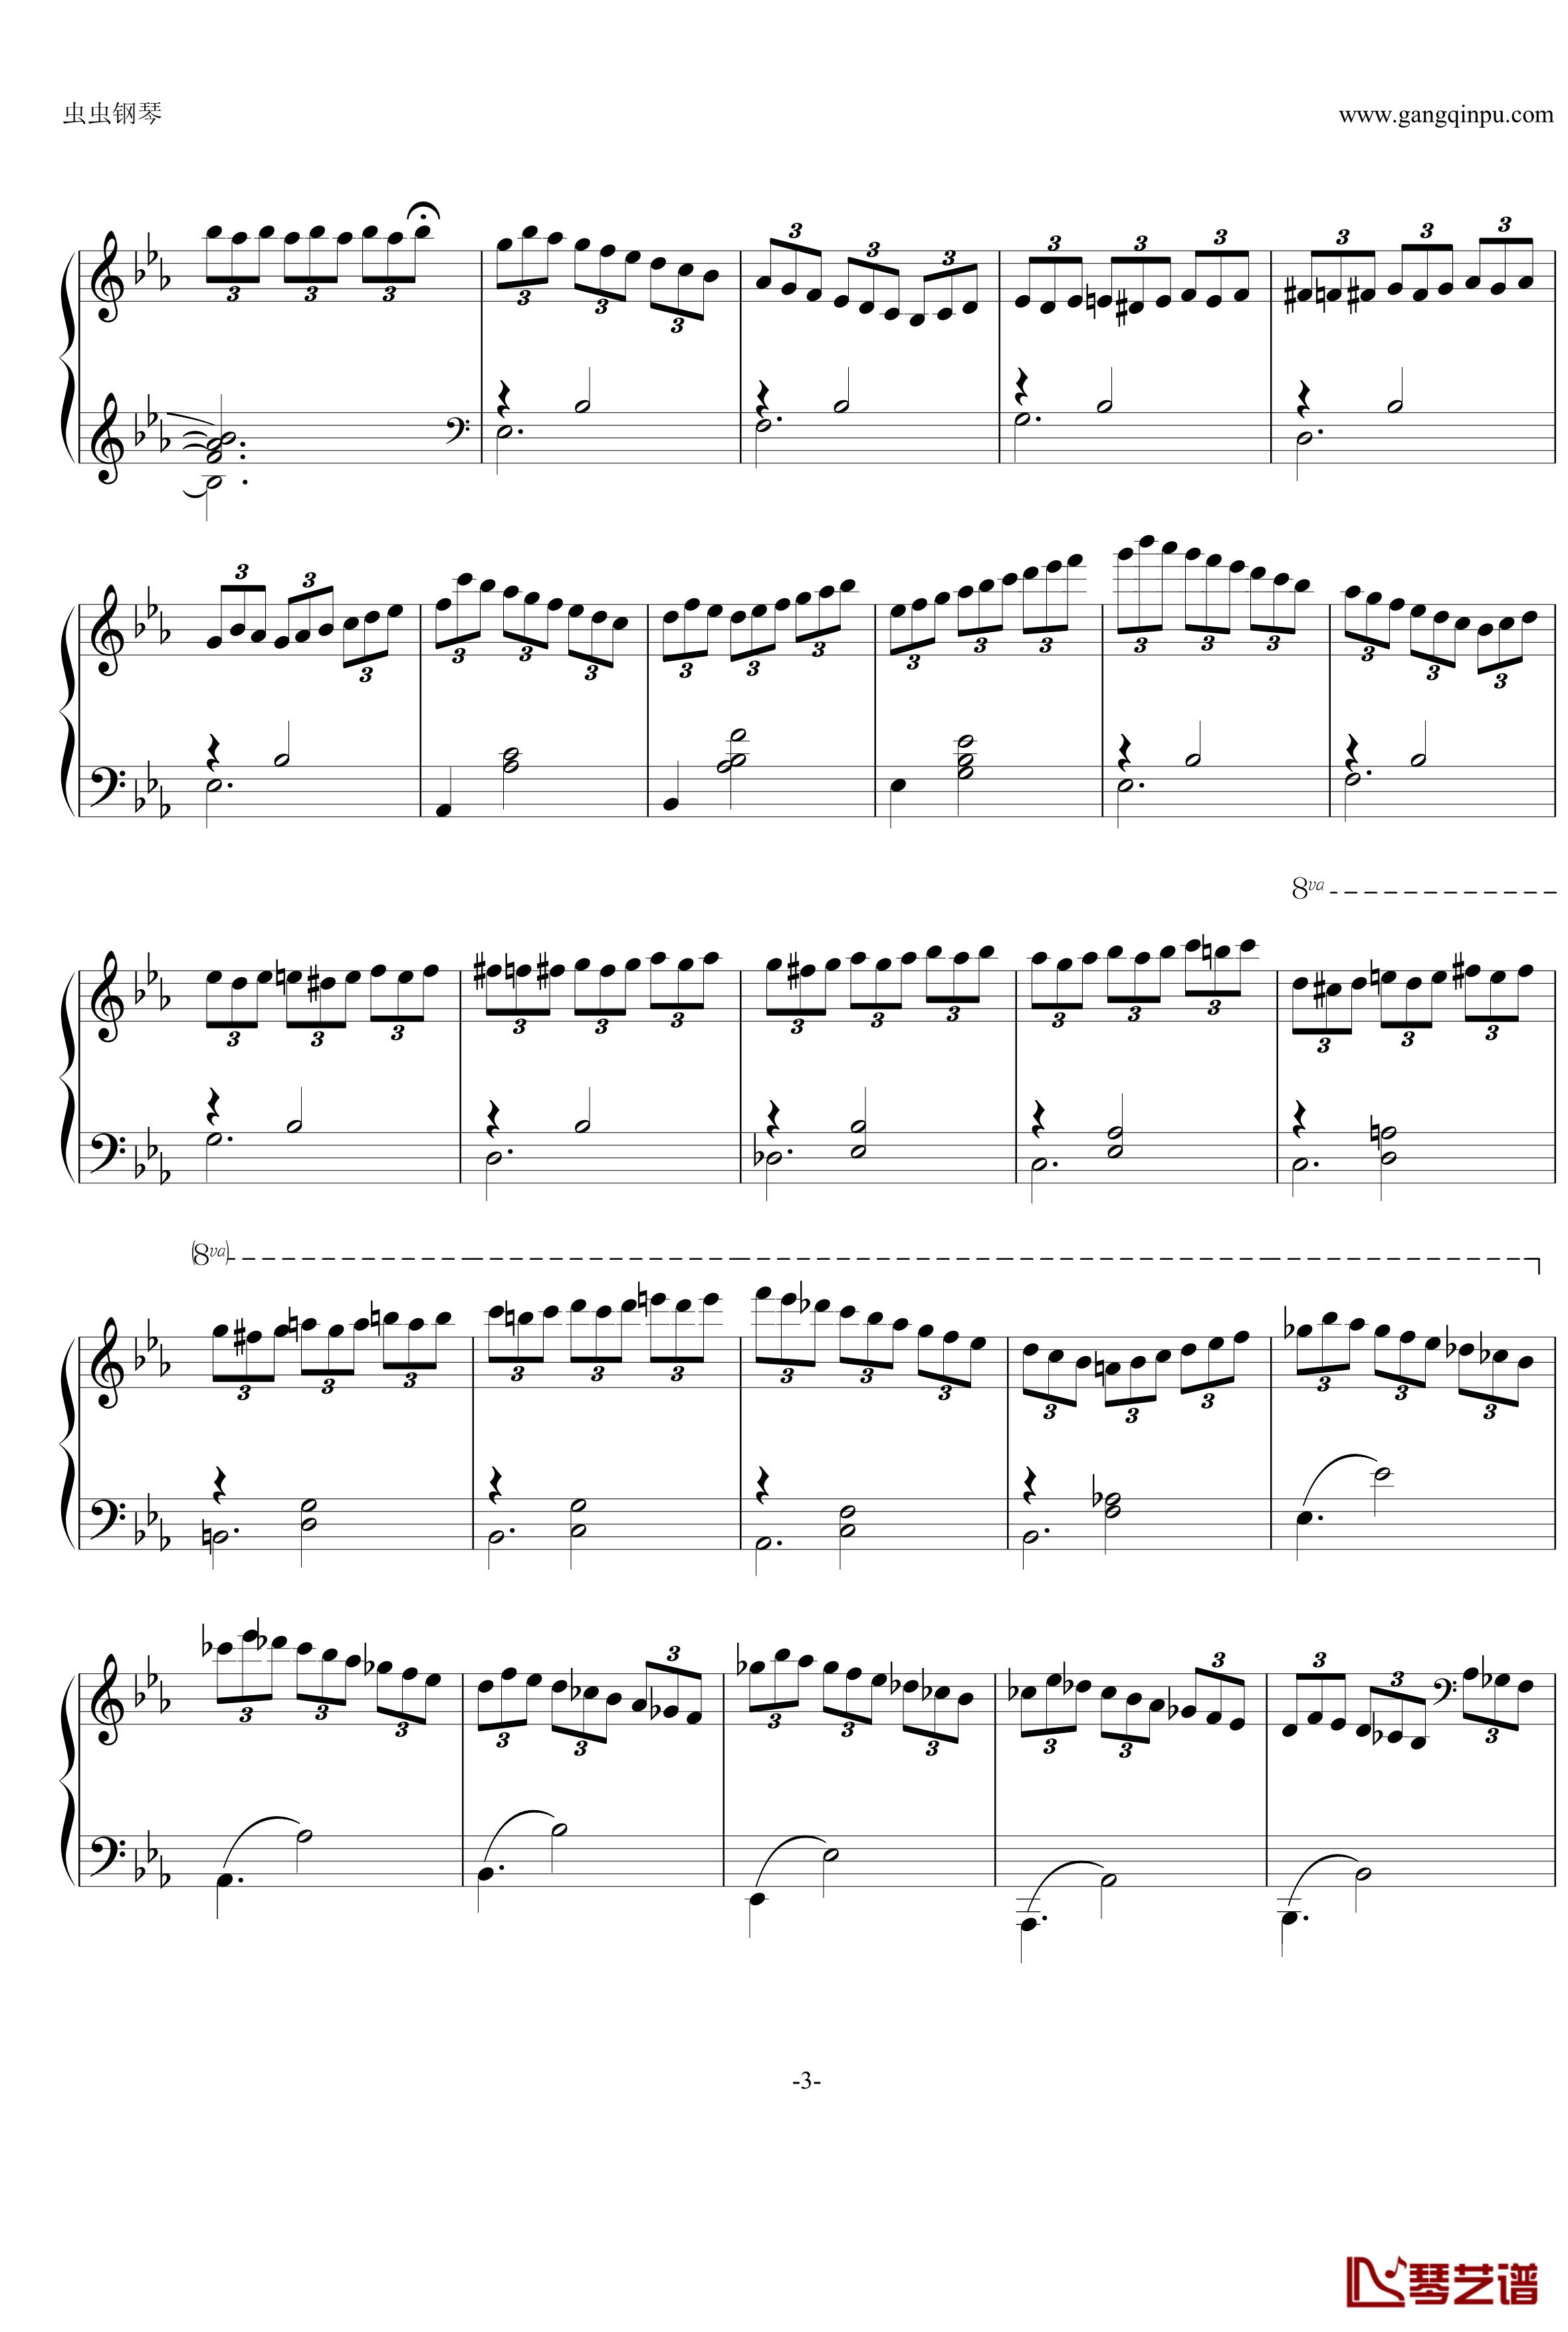 即兴曲Op.90 No.2钢琴谱-舒伯特-又名D899 No.23